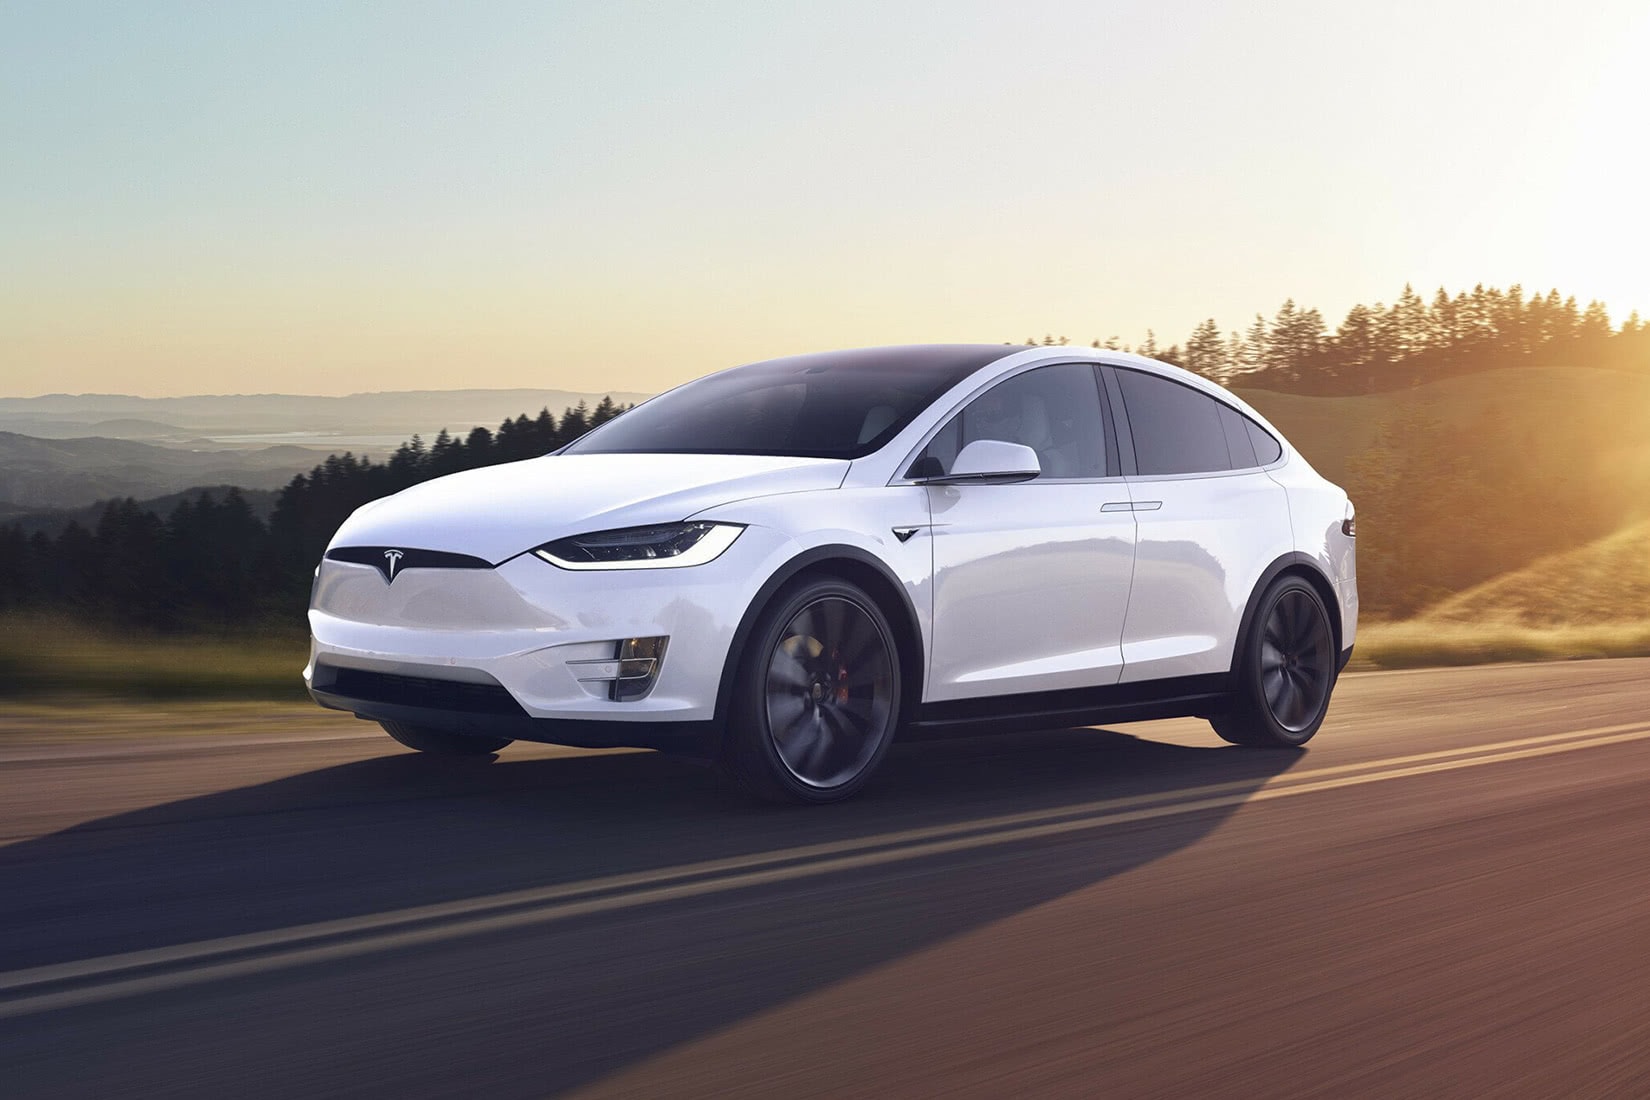 meilleur suv de luxe 2021 Tesla Model X - It's Luxe Time